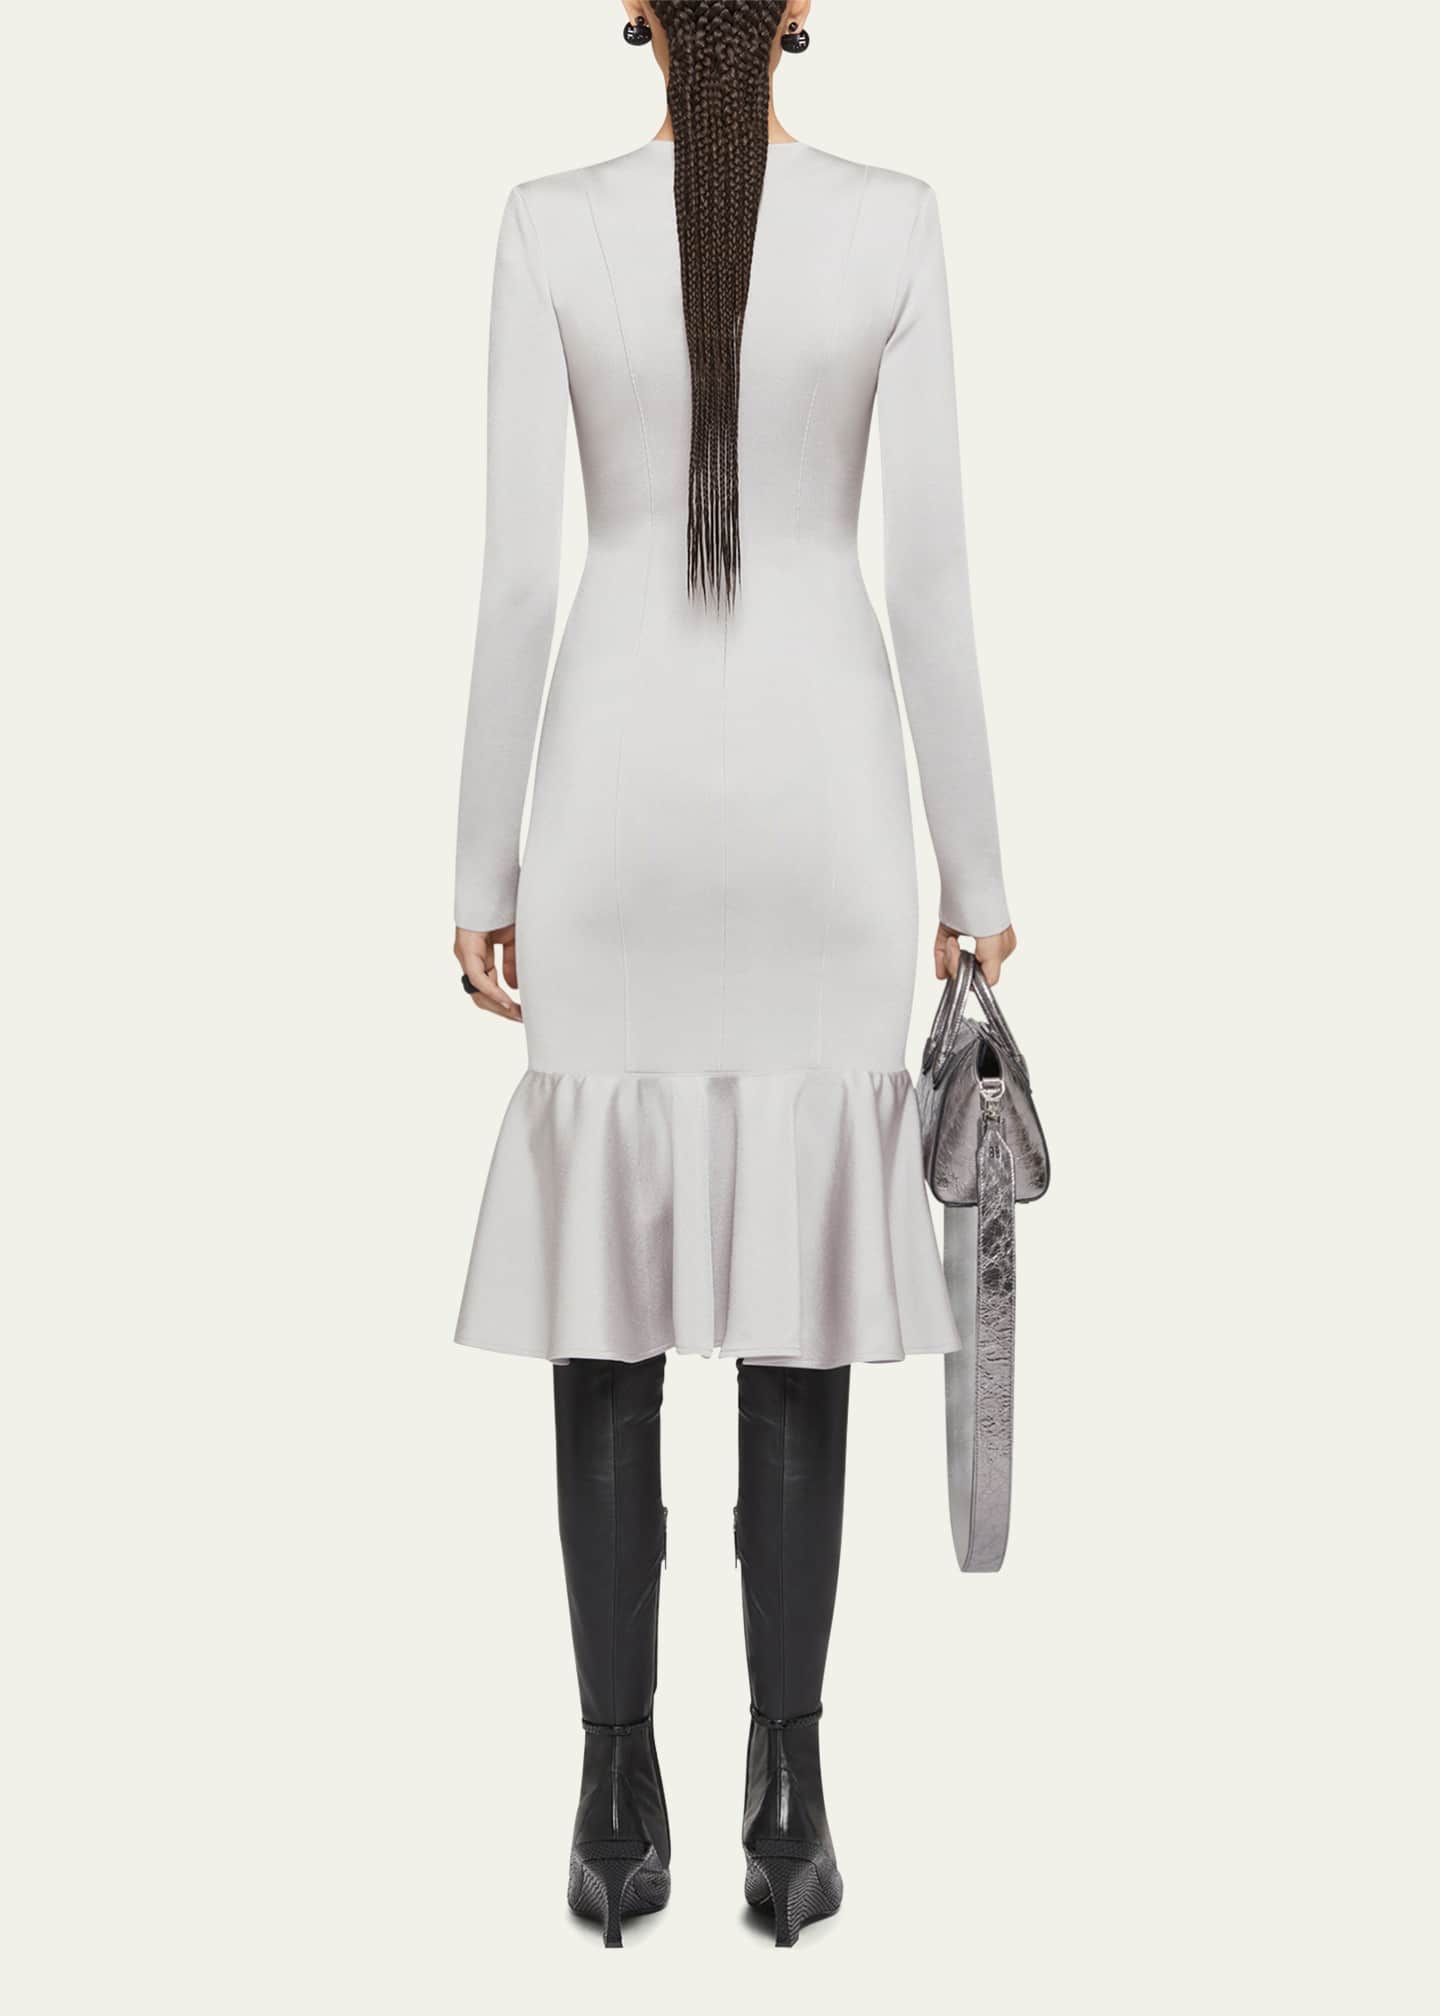 Givenchy Cutouts And Crystal Ring Flounce Hem Midi Dress - Bergdorf Goodman